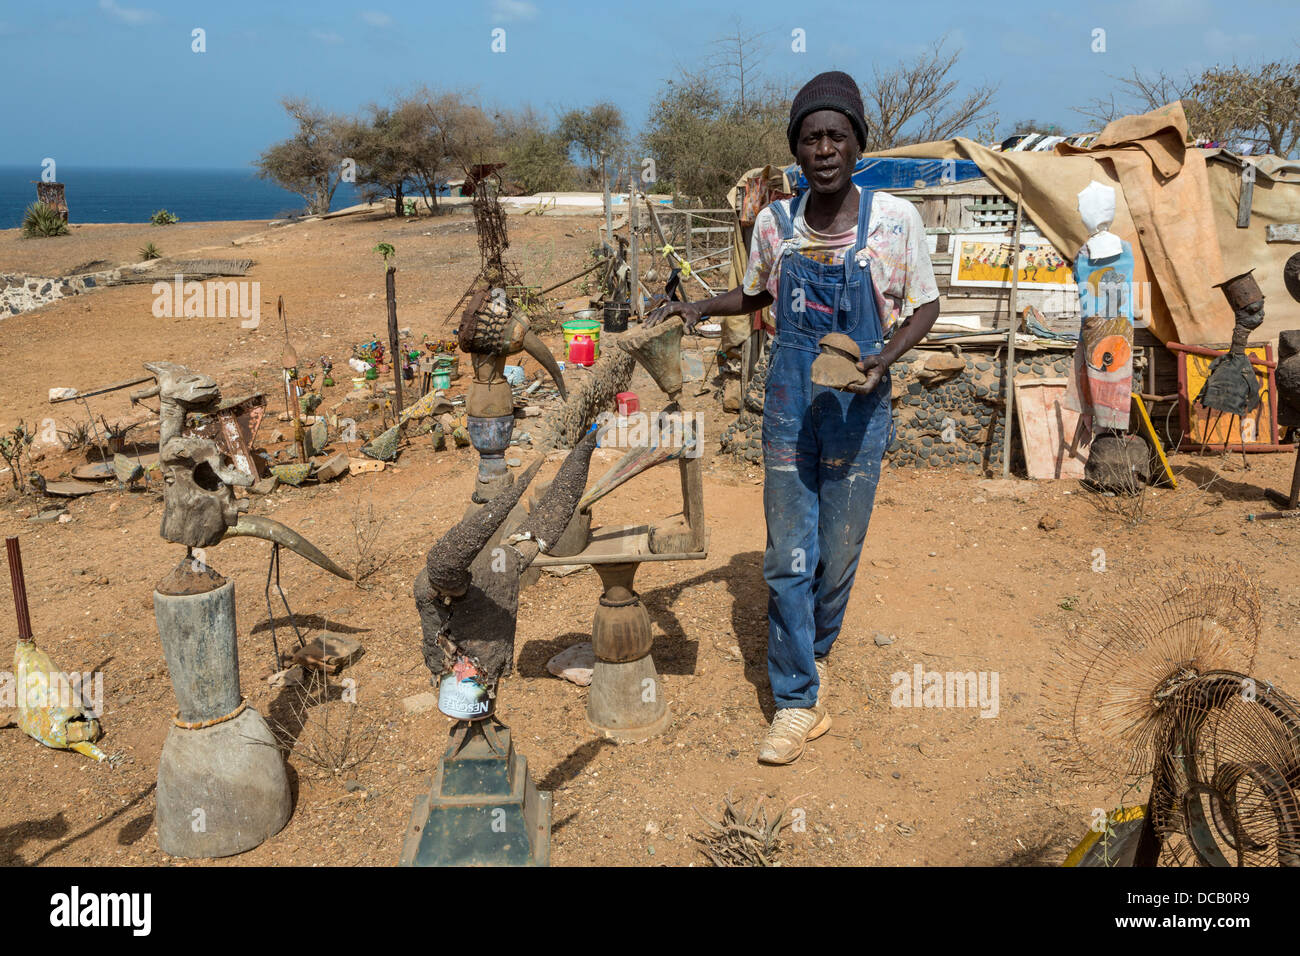 Artiste Amadou Dieng entouré par ses créations d'objets trouvés et récupérés. L'île de Gorée, au Sénégal. Banque D'Images